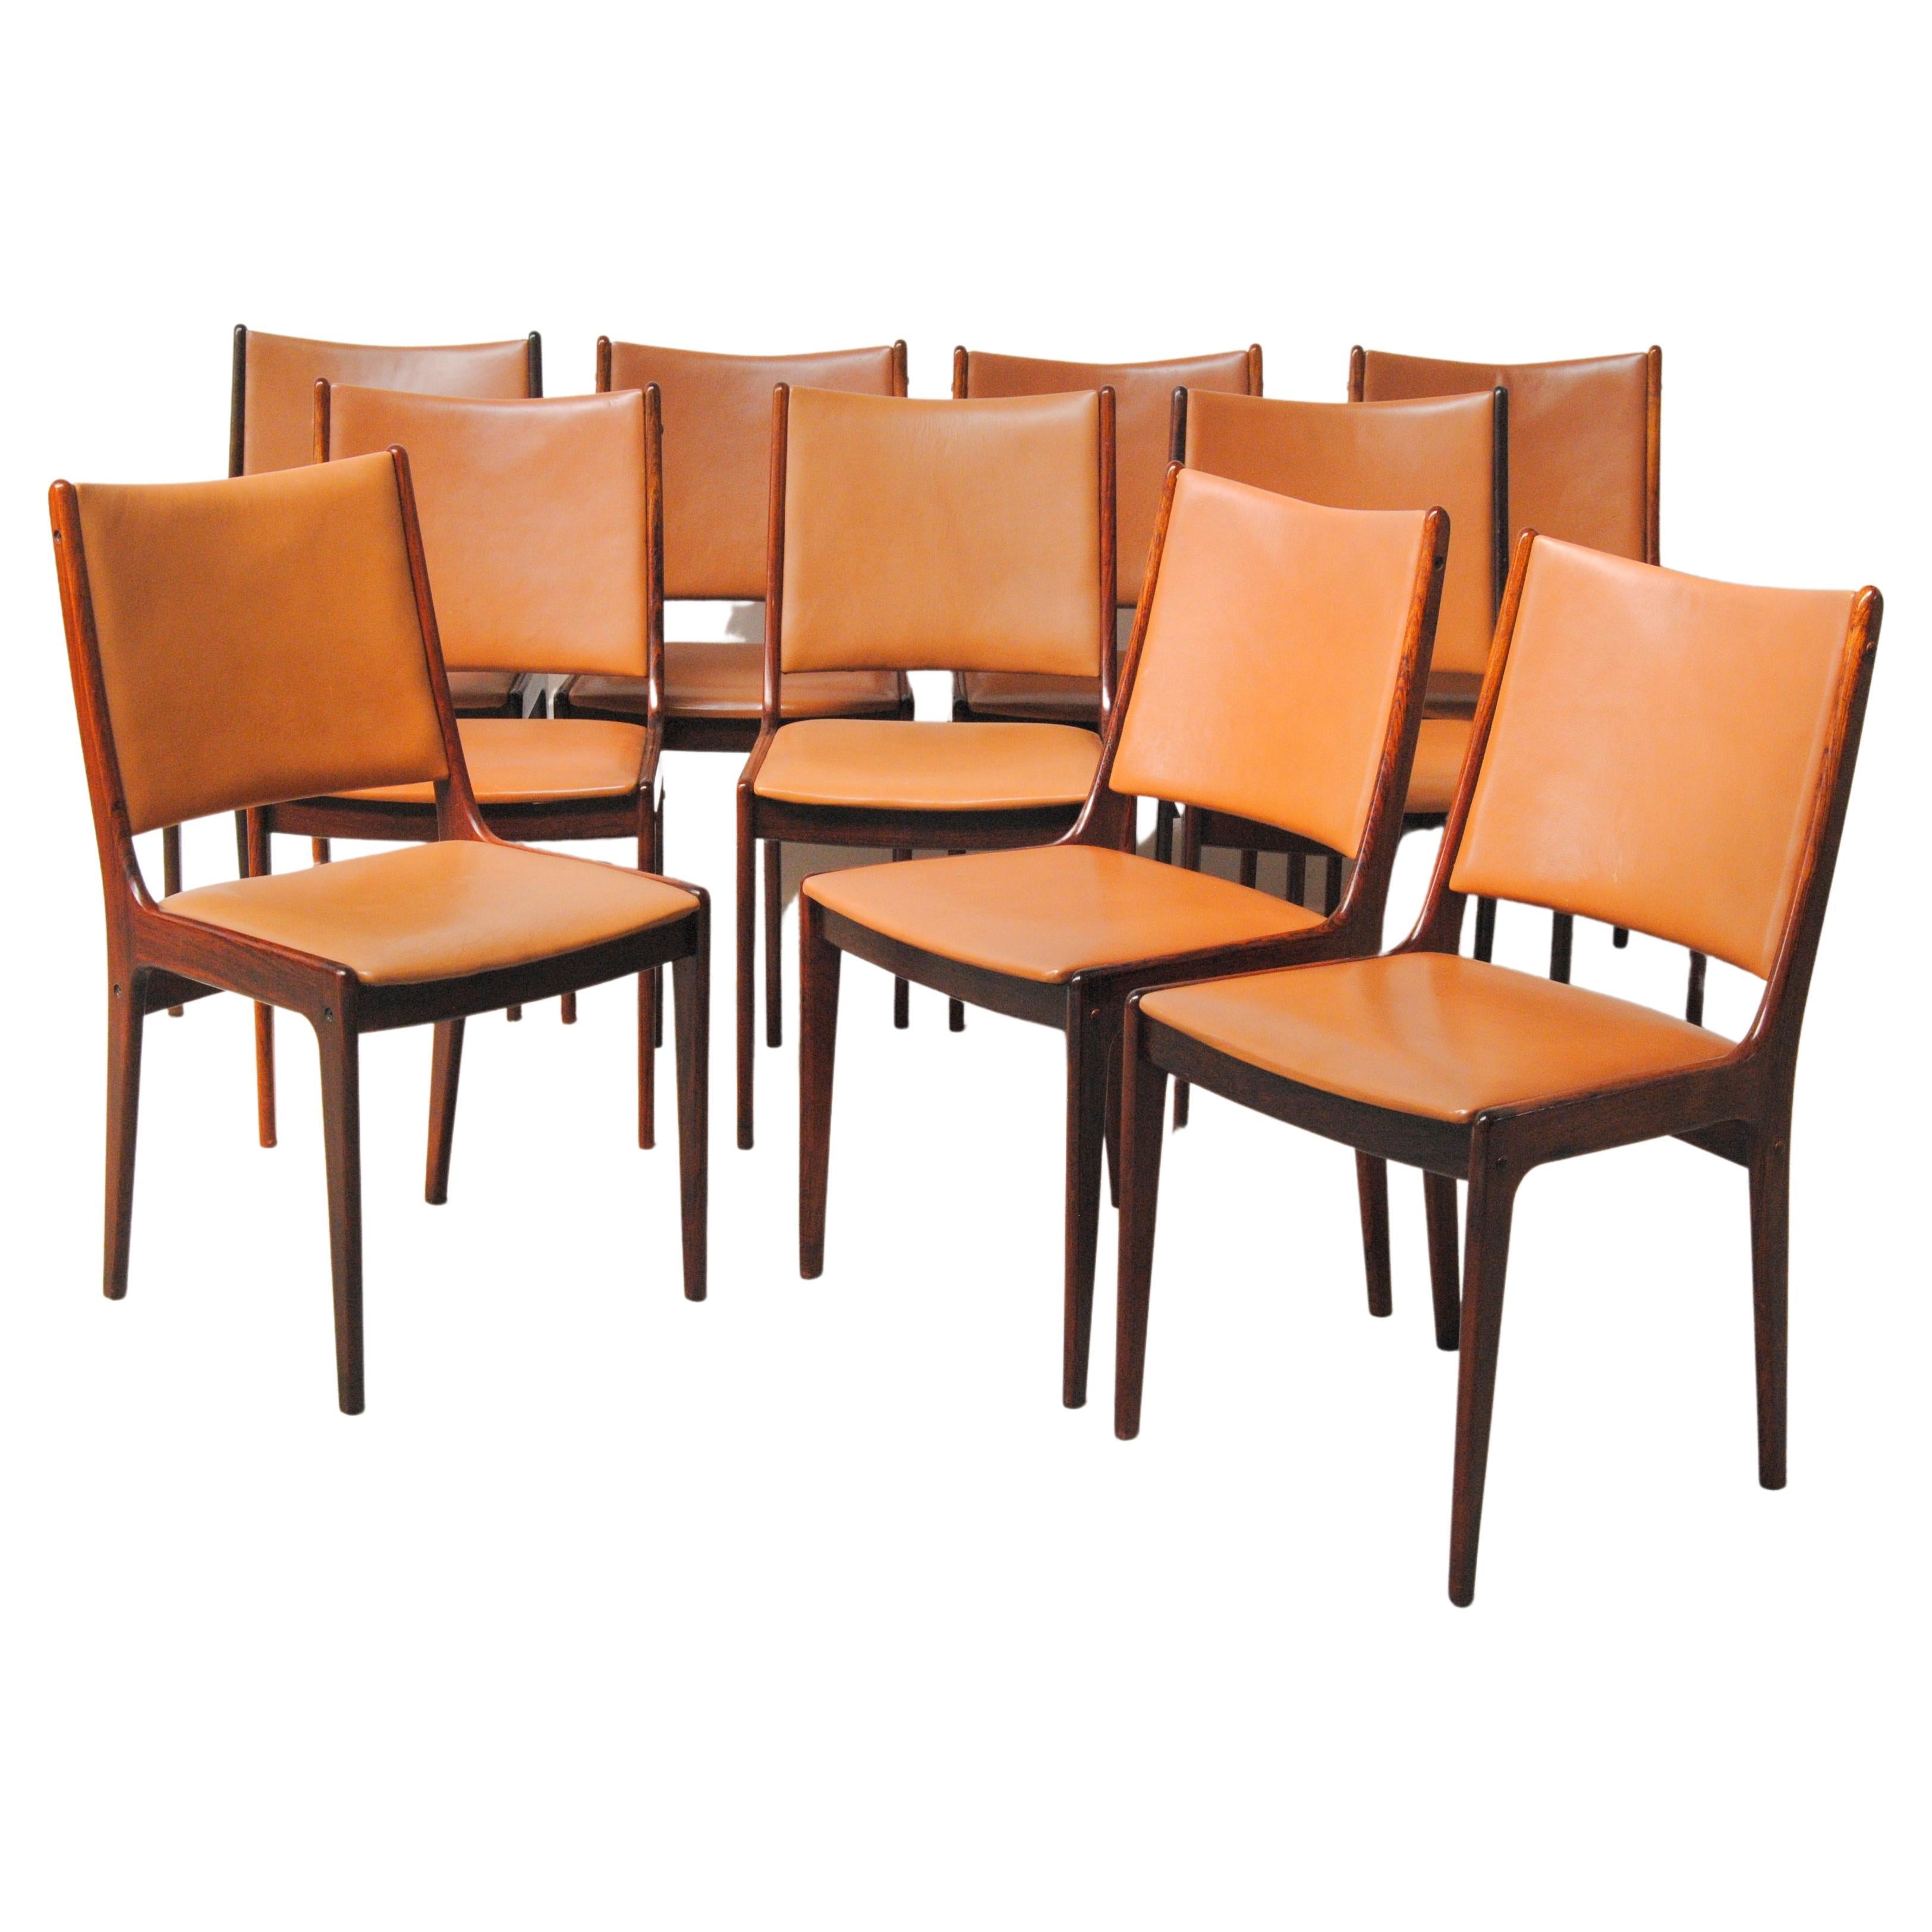 Dix chaises de salle à manger restaurées Johannes Andersen en bois de rose, tapisserie personnalisée incluse